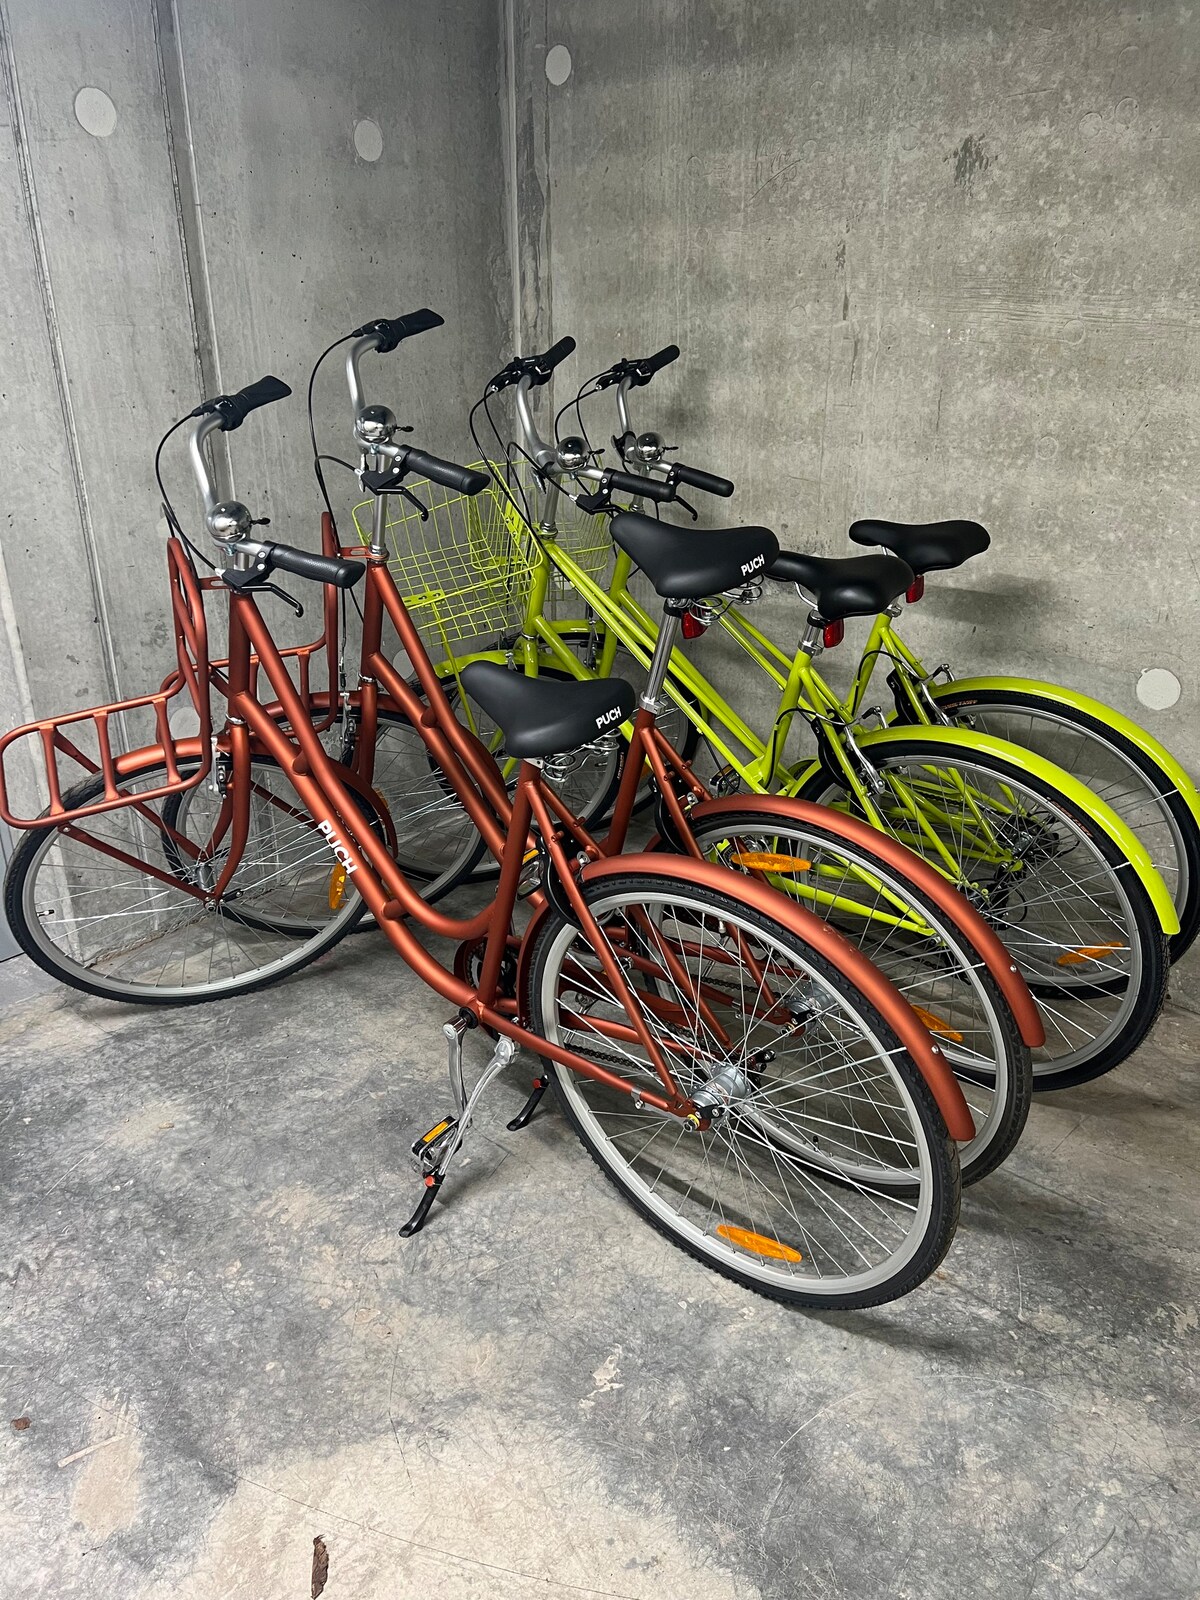 Lejlighed til 4 voksne + cykler.